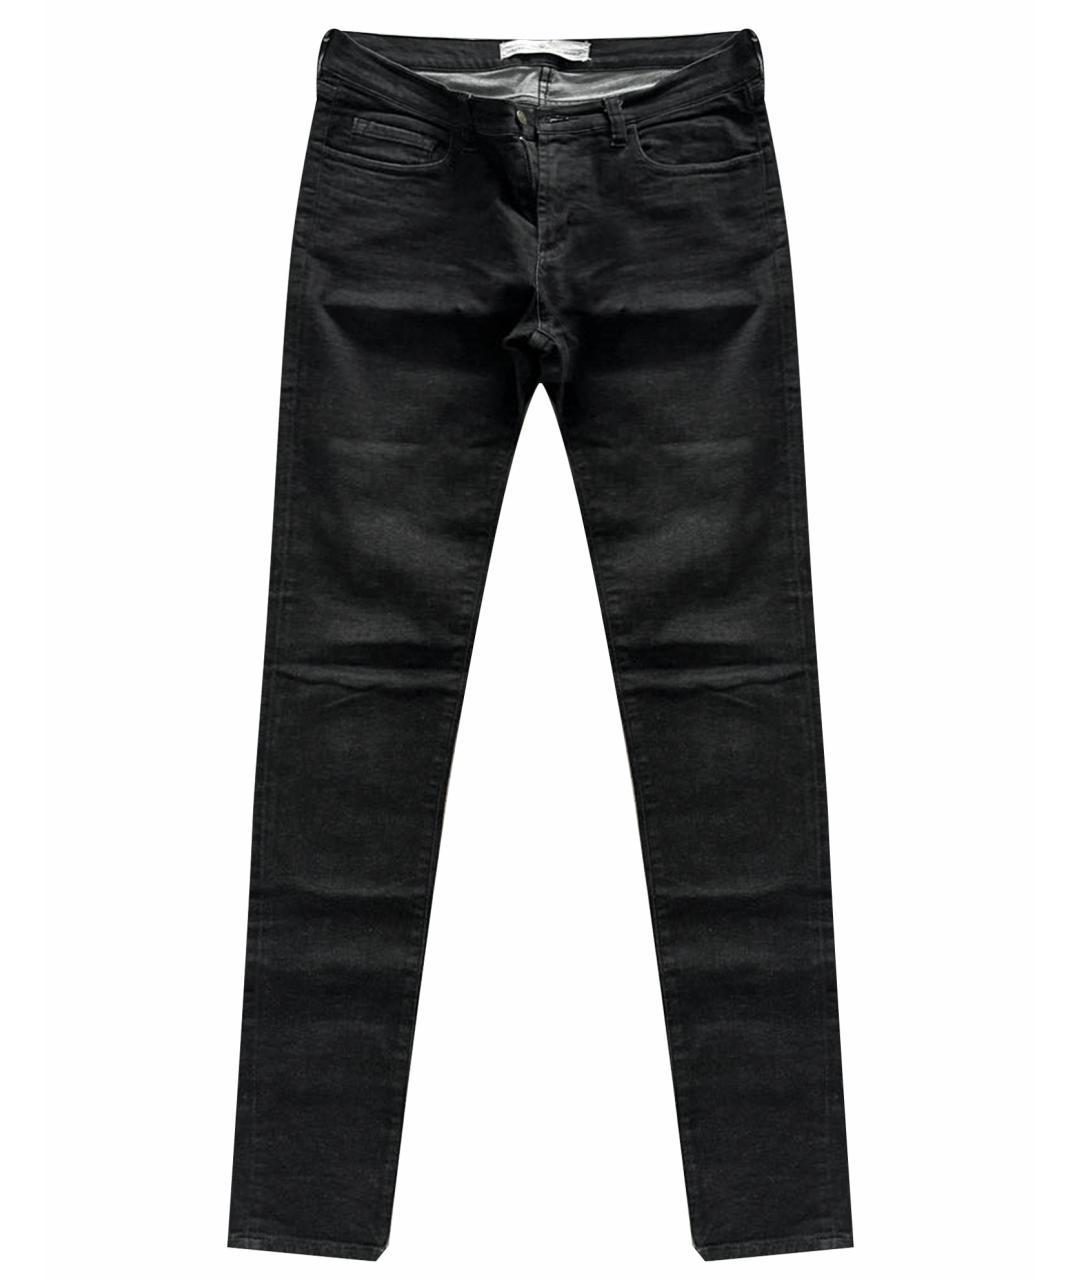 GOLDEN GOOSE DELUXE BRAND Черные хлопковые джинсы слим, фото 1